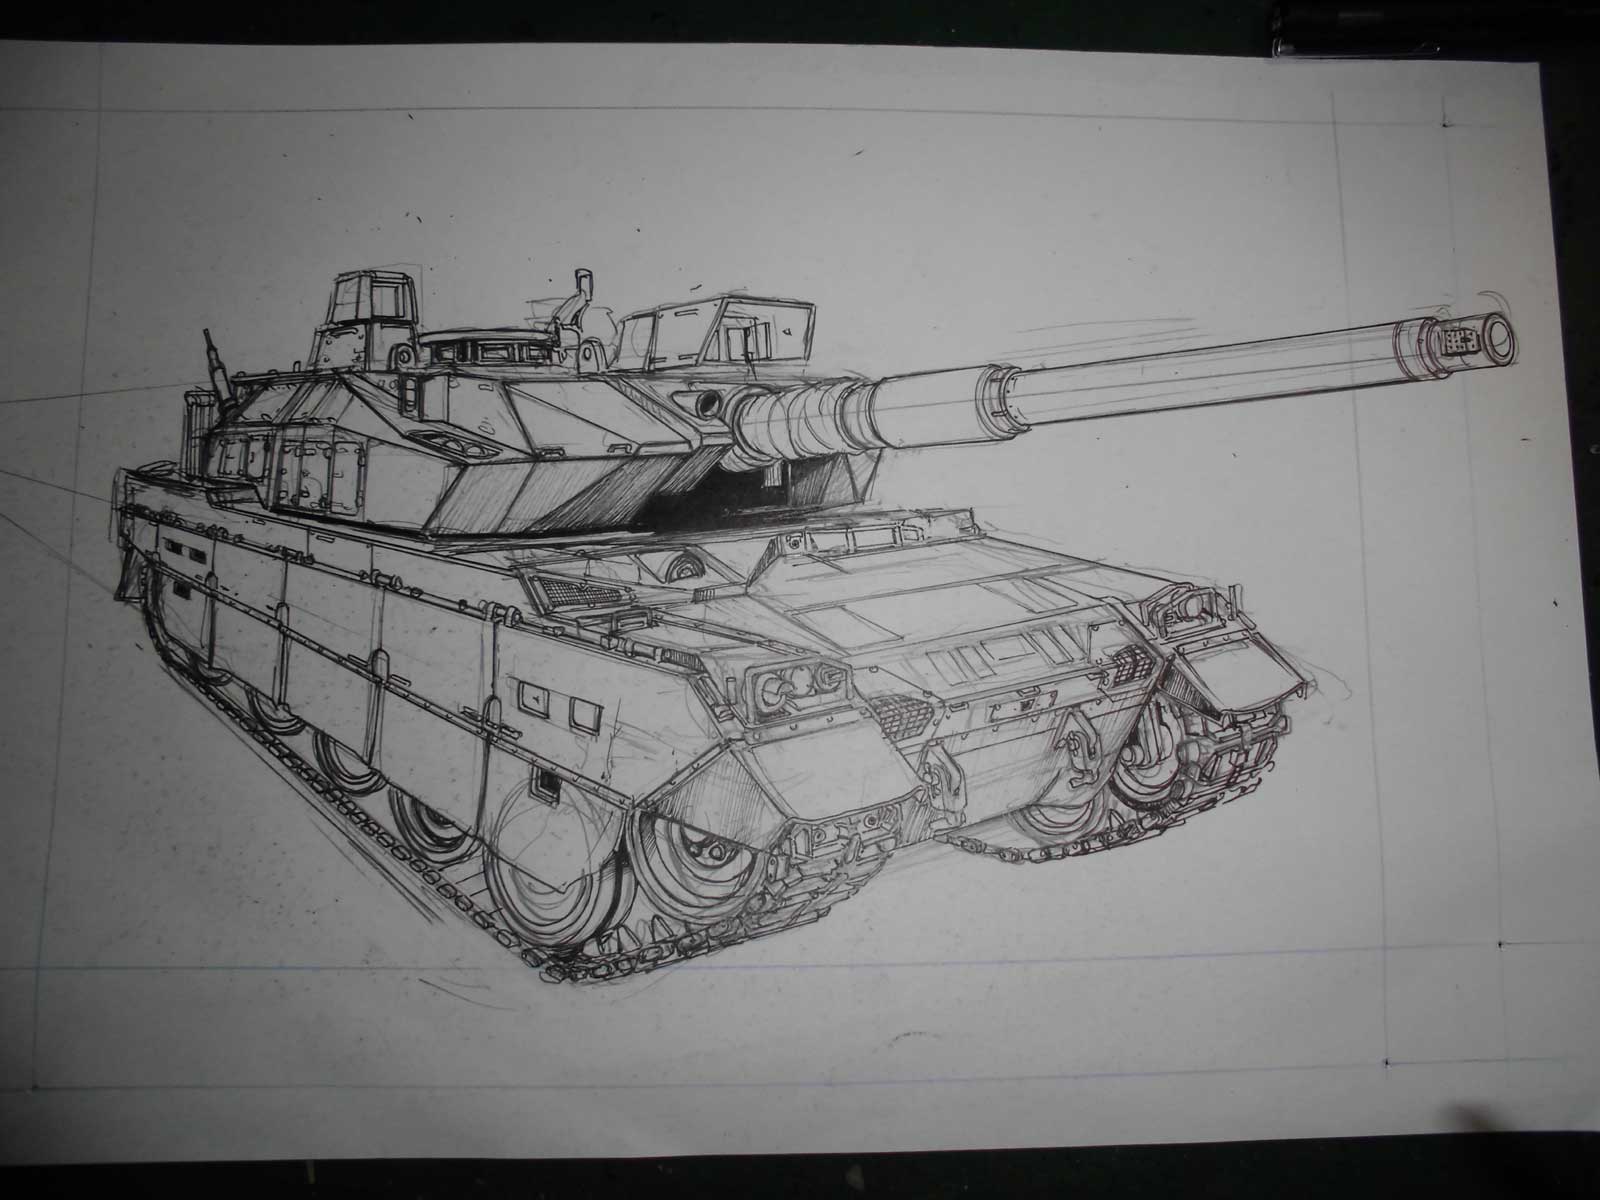 すんどめ自衛隊 流 戦車の描き方 漫画家かたやままこと のホームページ 楽天ブログ